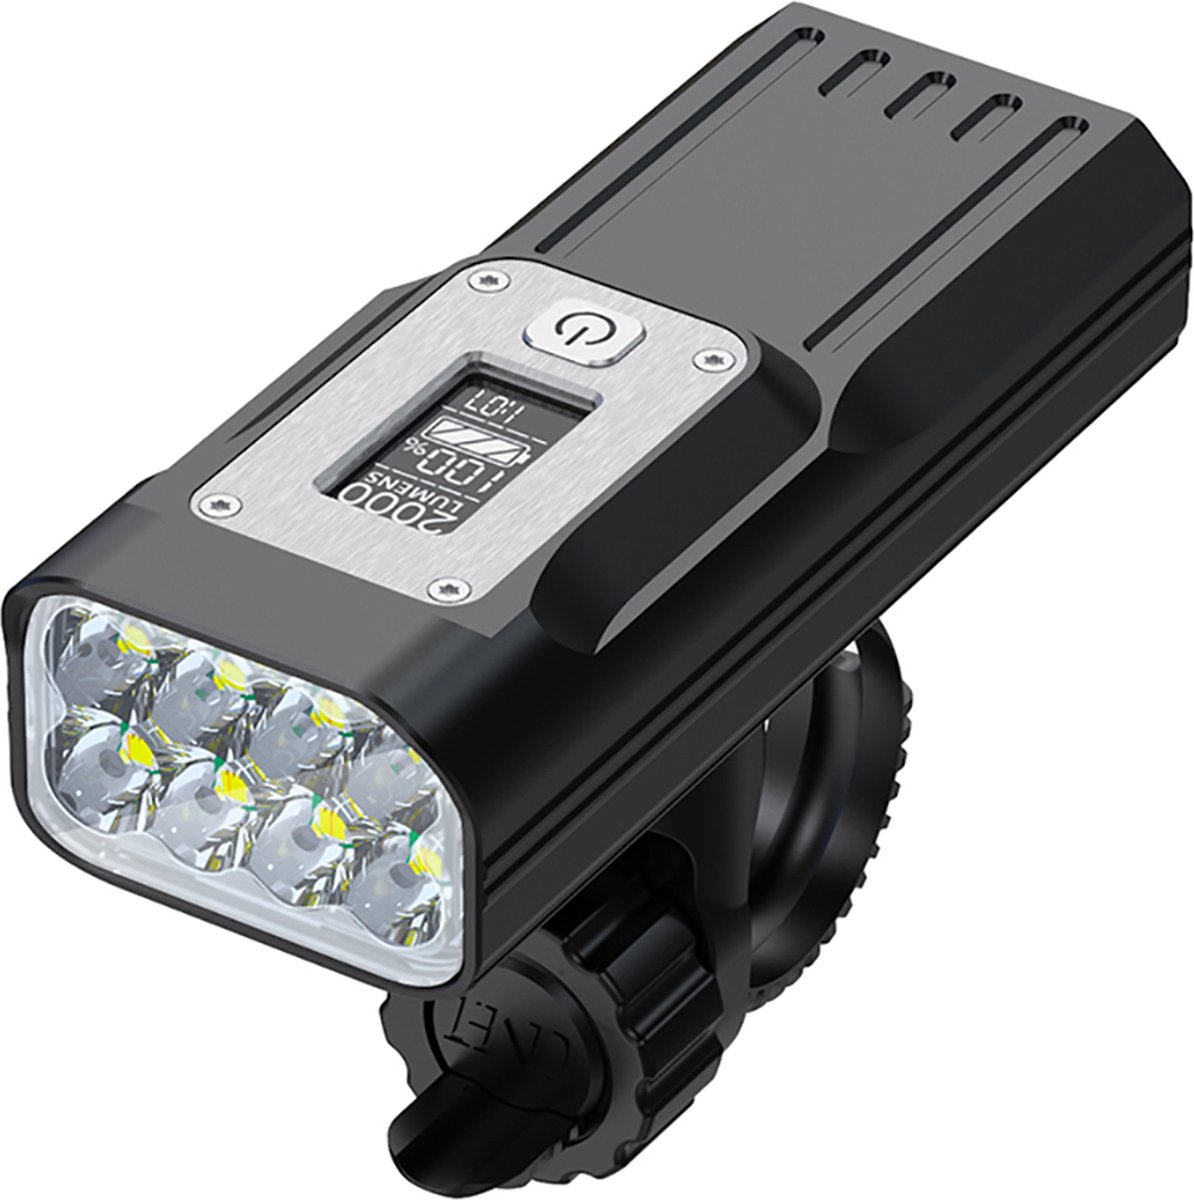 Lightyourbike ® ALPHA 2000 - Fietsverlichting LED & USB Oplaadbaar - Powerbank 10.000 mAh - Fietslamp Racefiets & MTB - 2.000 Lumen